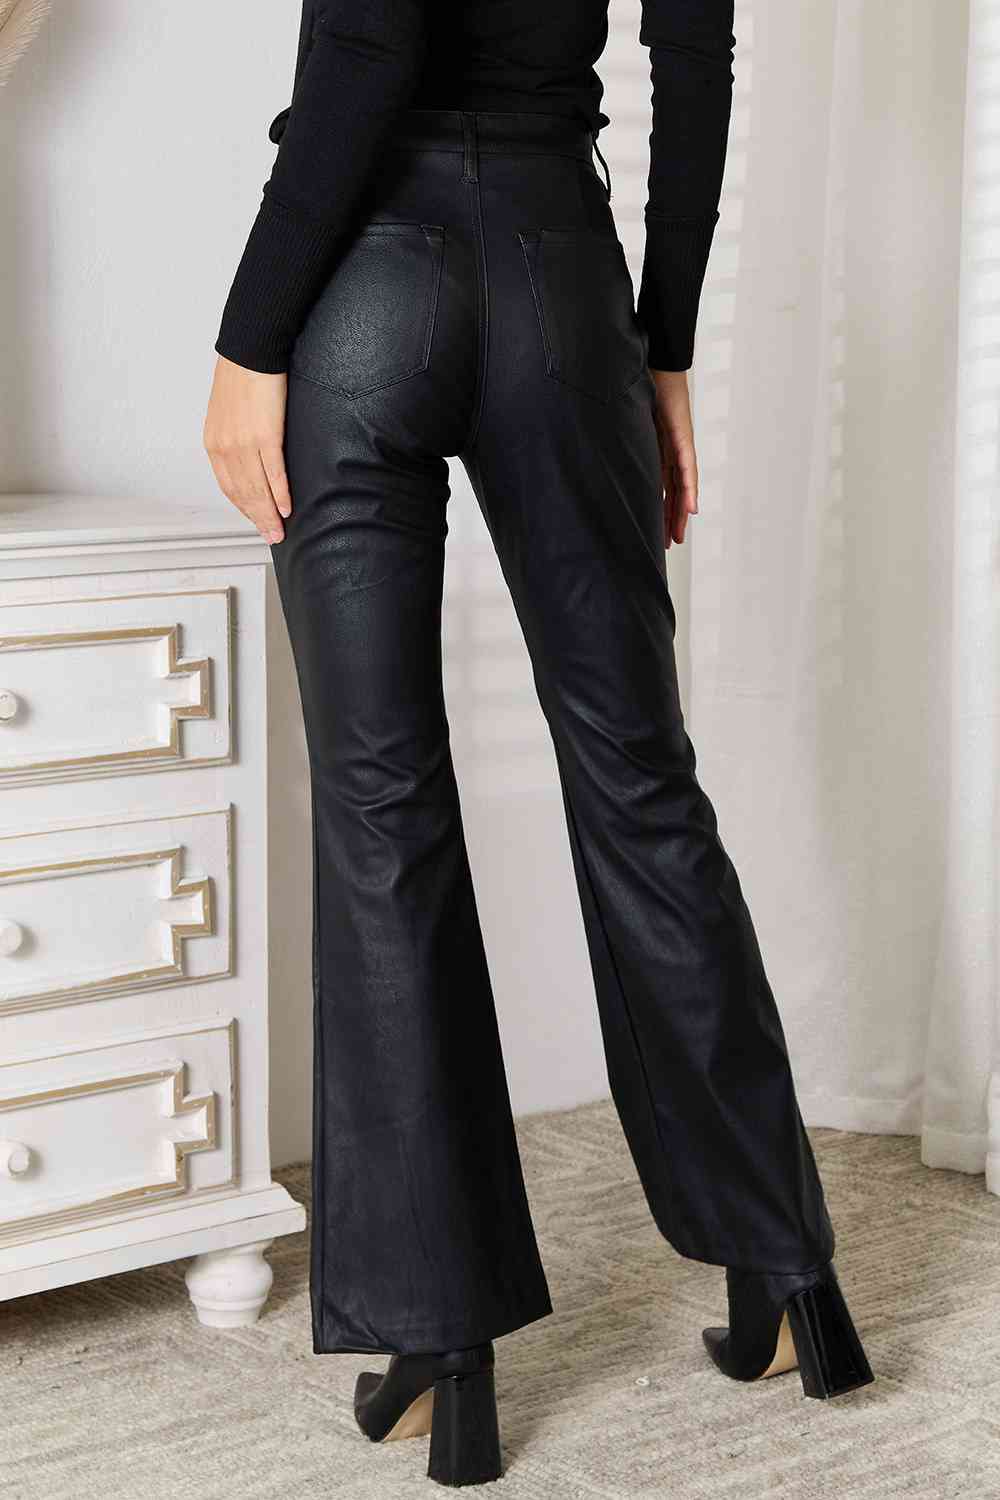 Black Kancan Slit Flare Leg Pants Sentient Beauty Fashions Apparel & Accessories